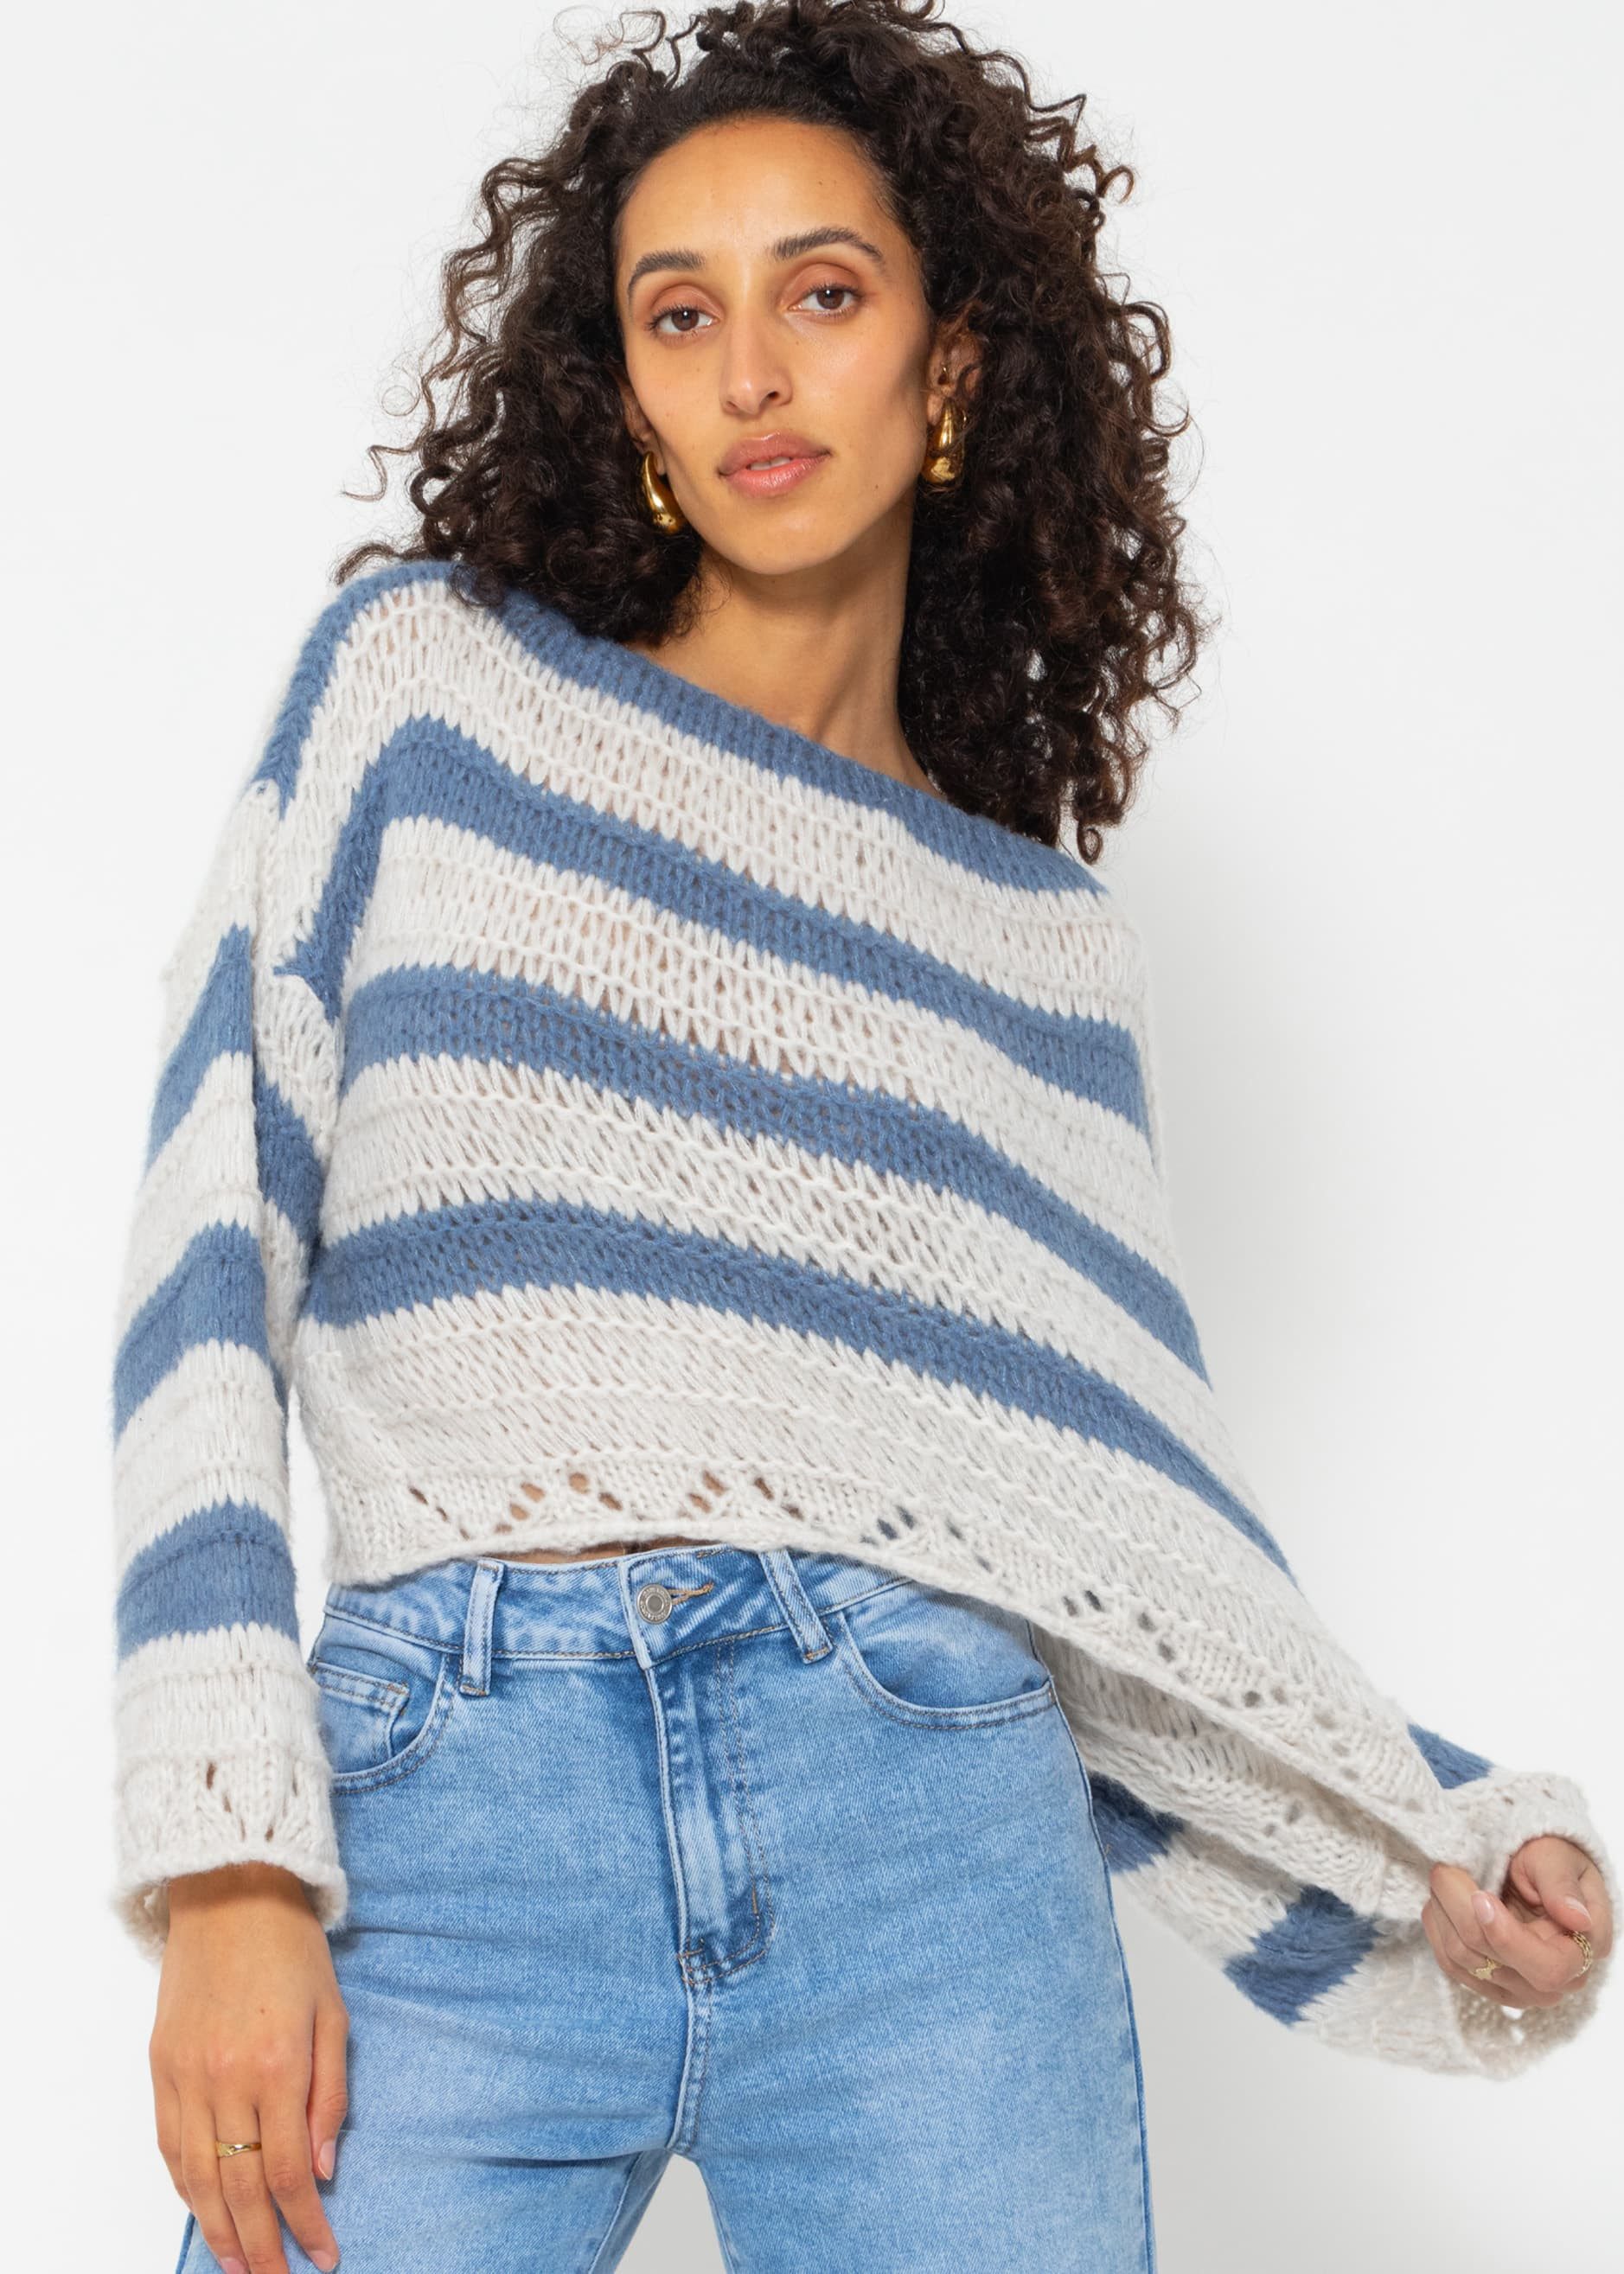 SASSYCLASSY Strickpullover Oversize Pullover mit Streifen Grobstrickpullover mit weiten Ärmeln und Ajour-Abschlüssen